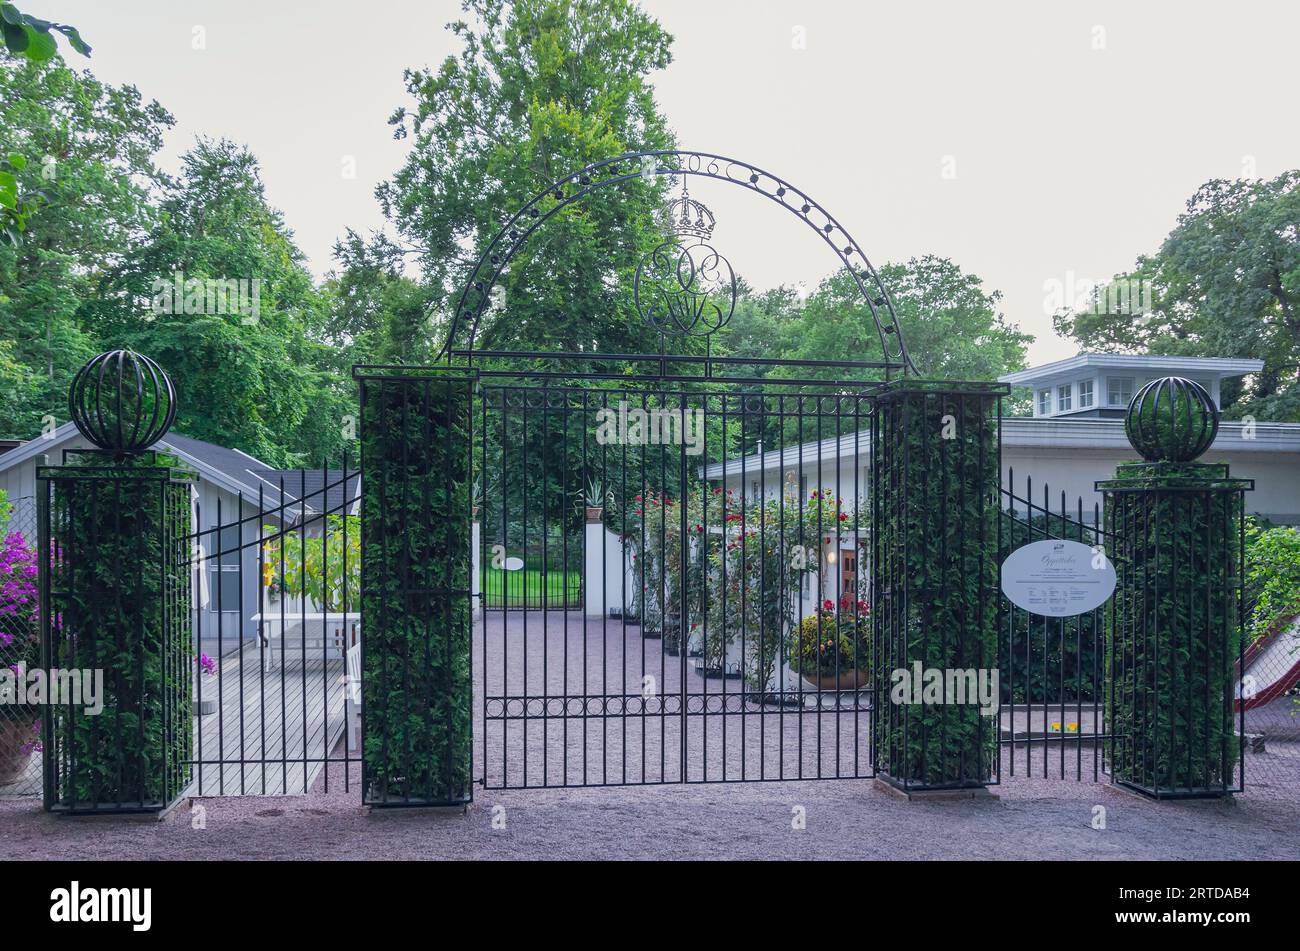 Porte d'entrée du palais de Solliden (Sollidens Slott), résidence d'été de la famille royale suédoise, Borgholm, île de Öland, comté de Kalmar, Suède. Banque D'Images